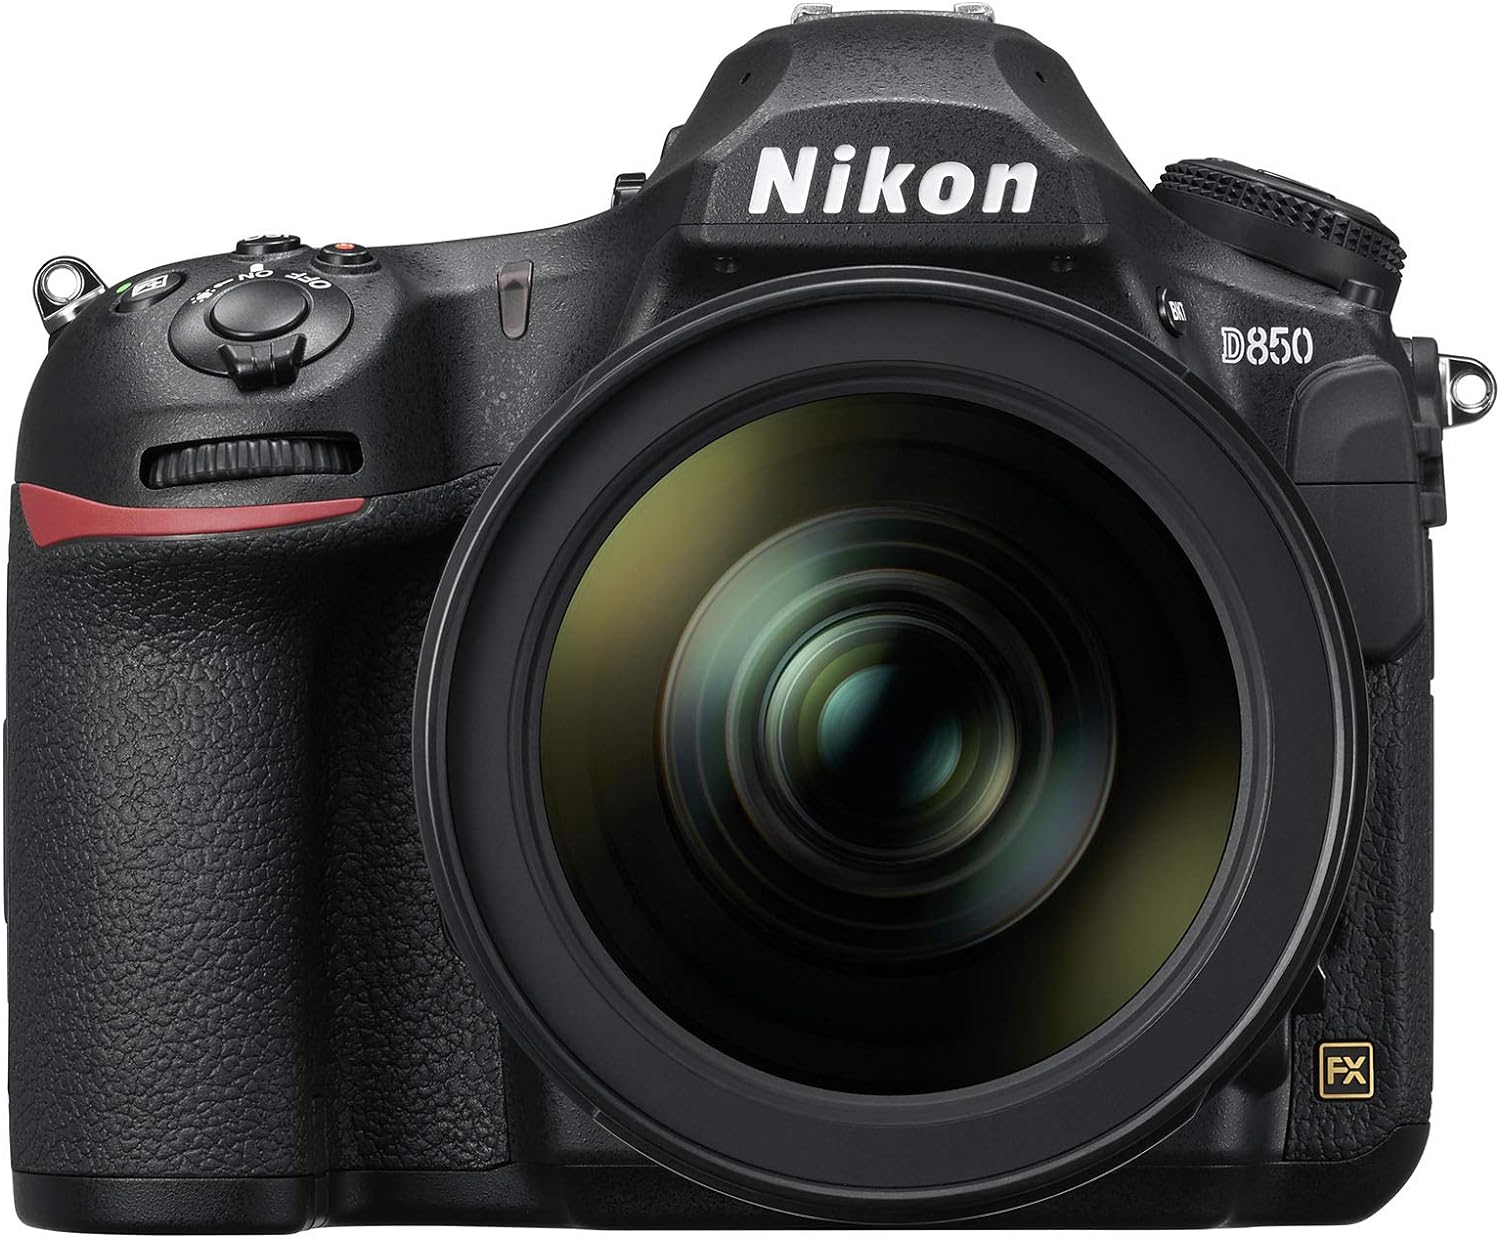 La Nikon Z fc no es la única cámara del mercado con un diseño de